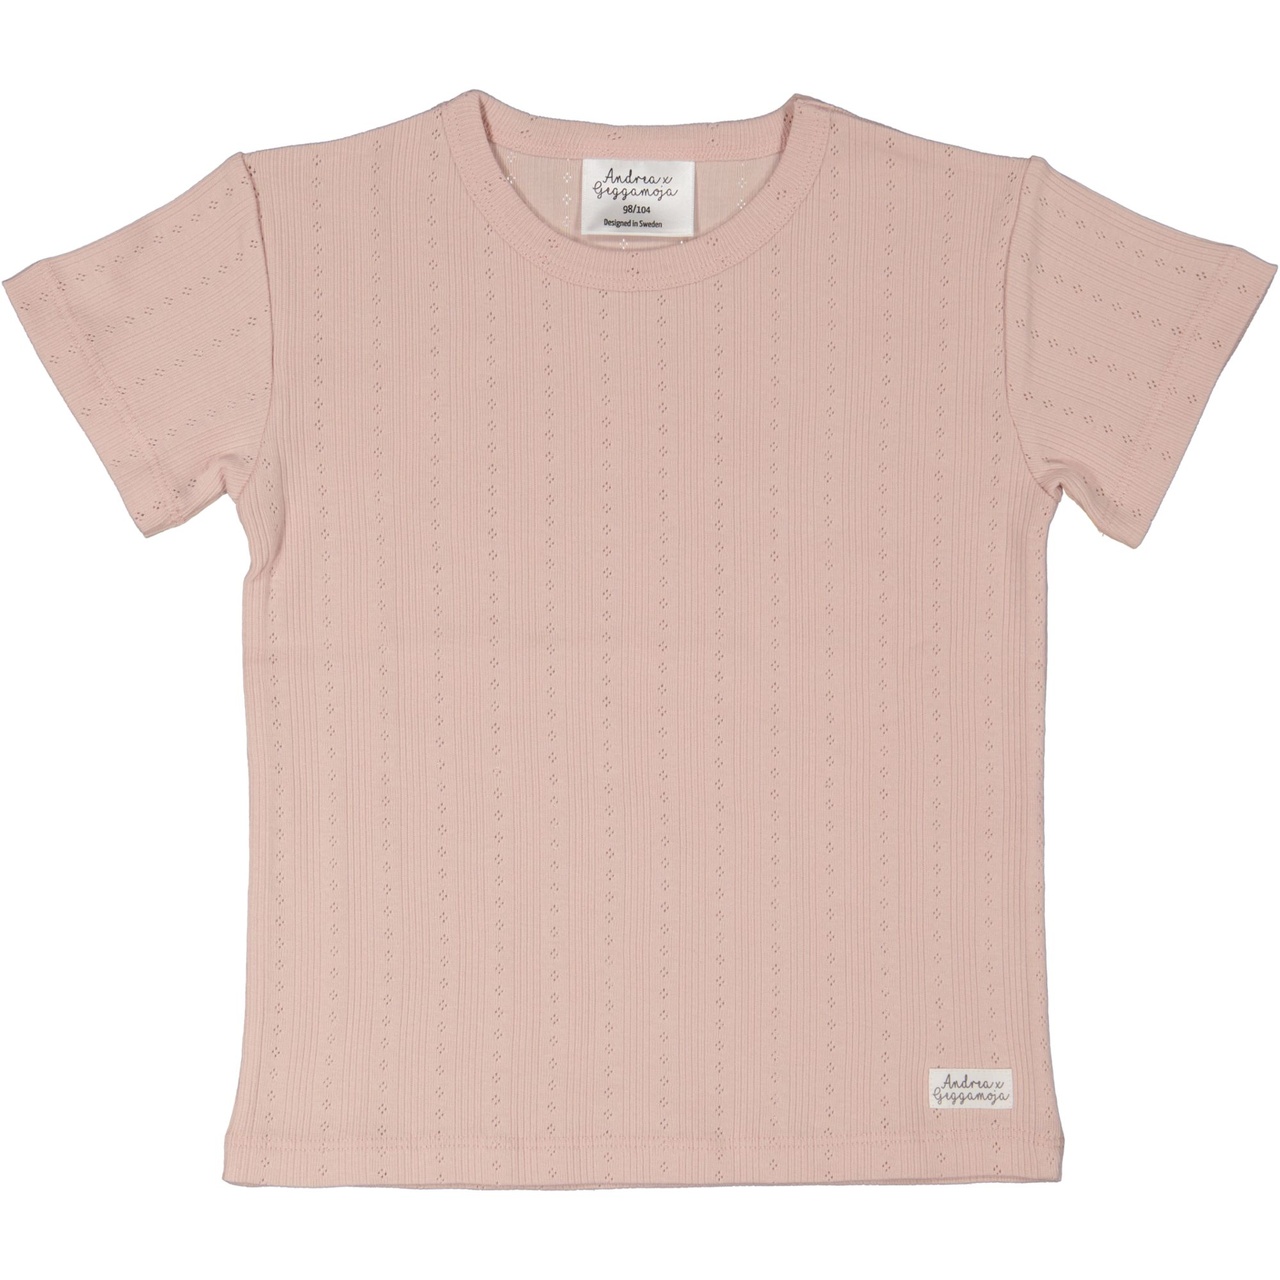 T-shirt Pink Rose  110/116